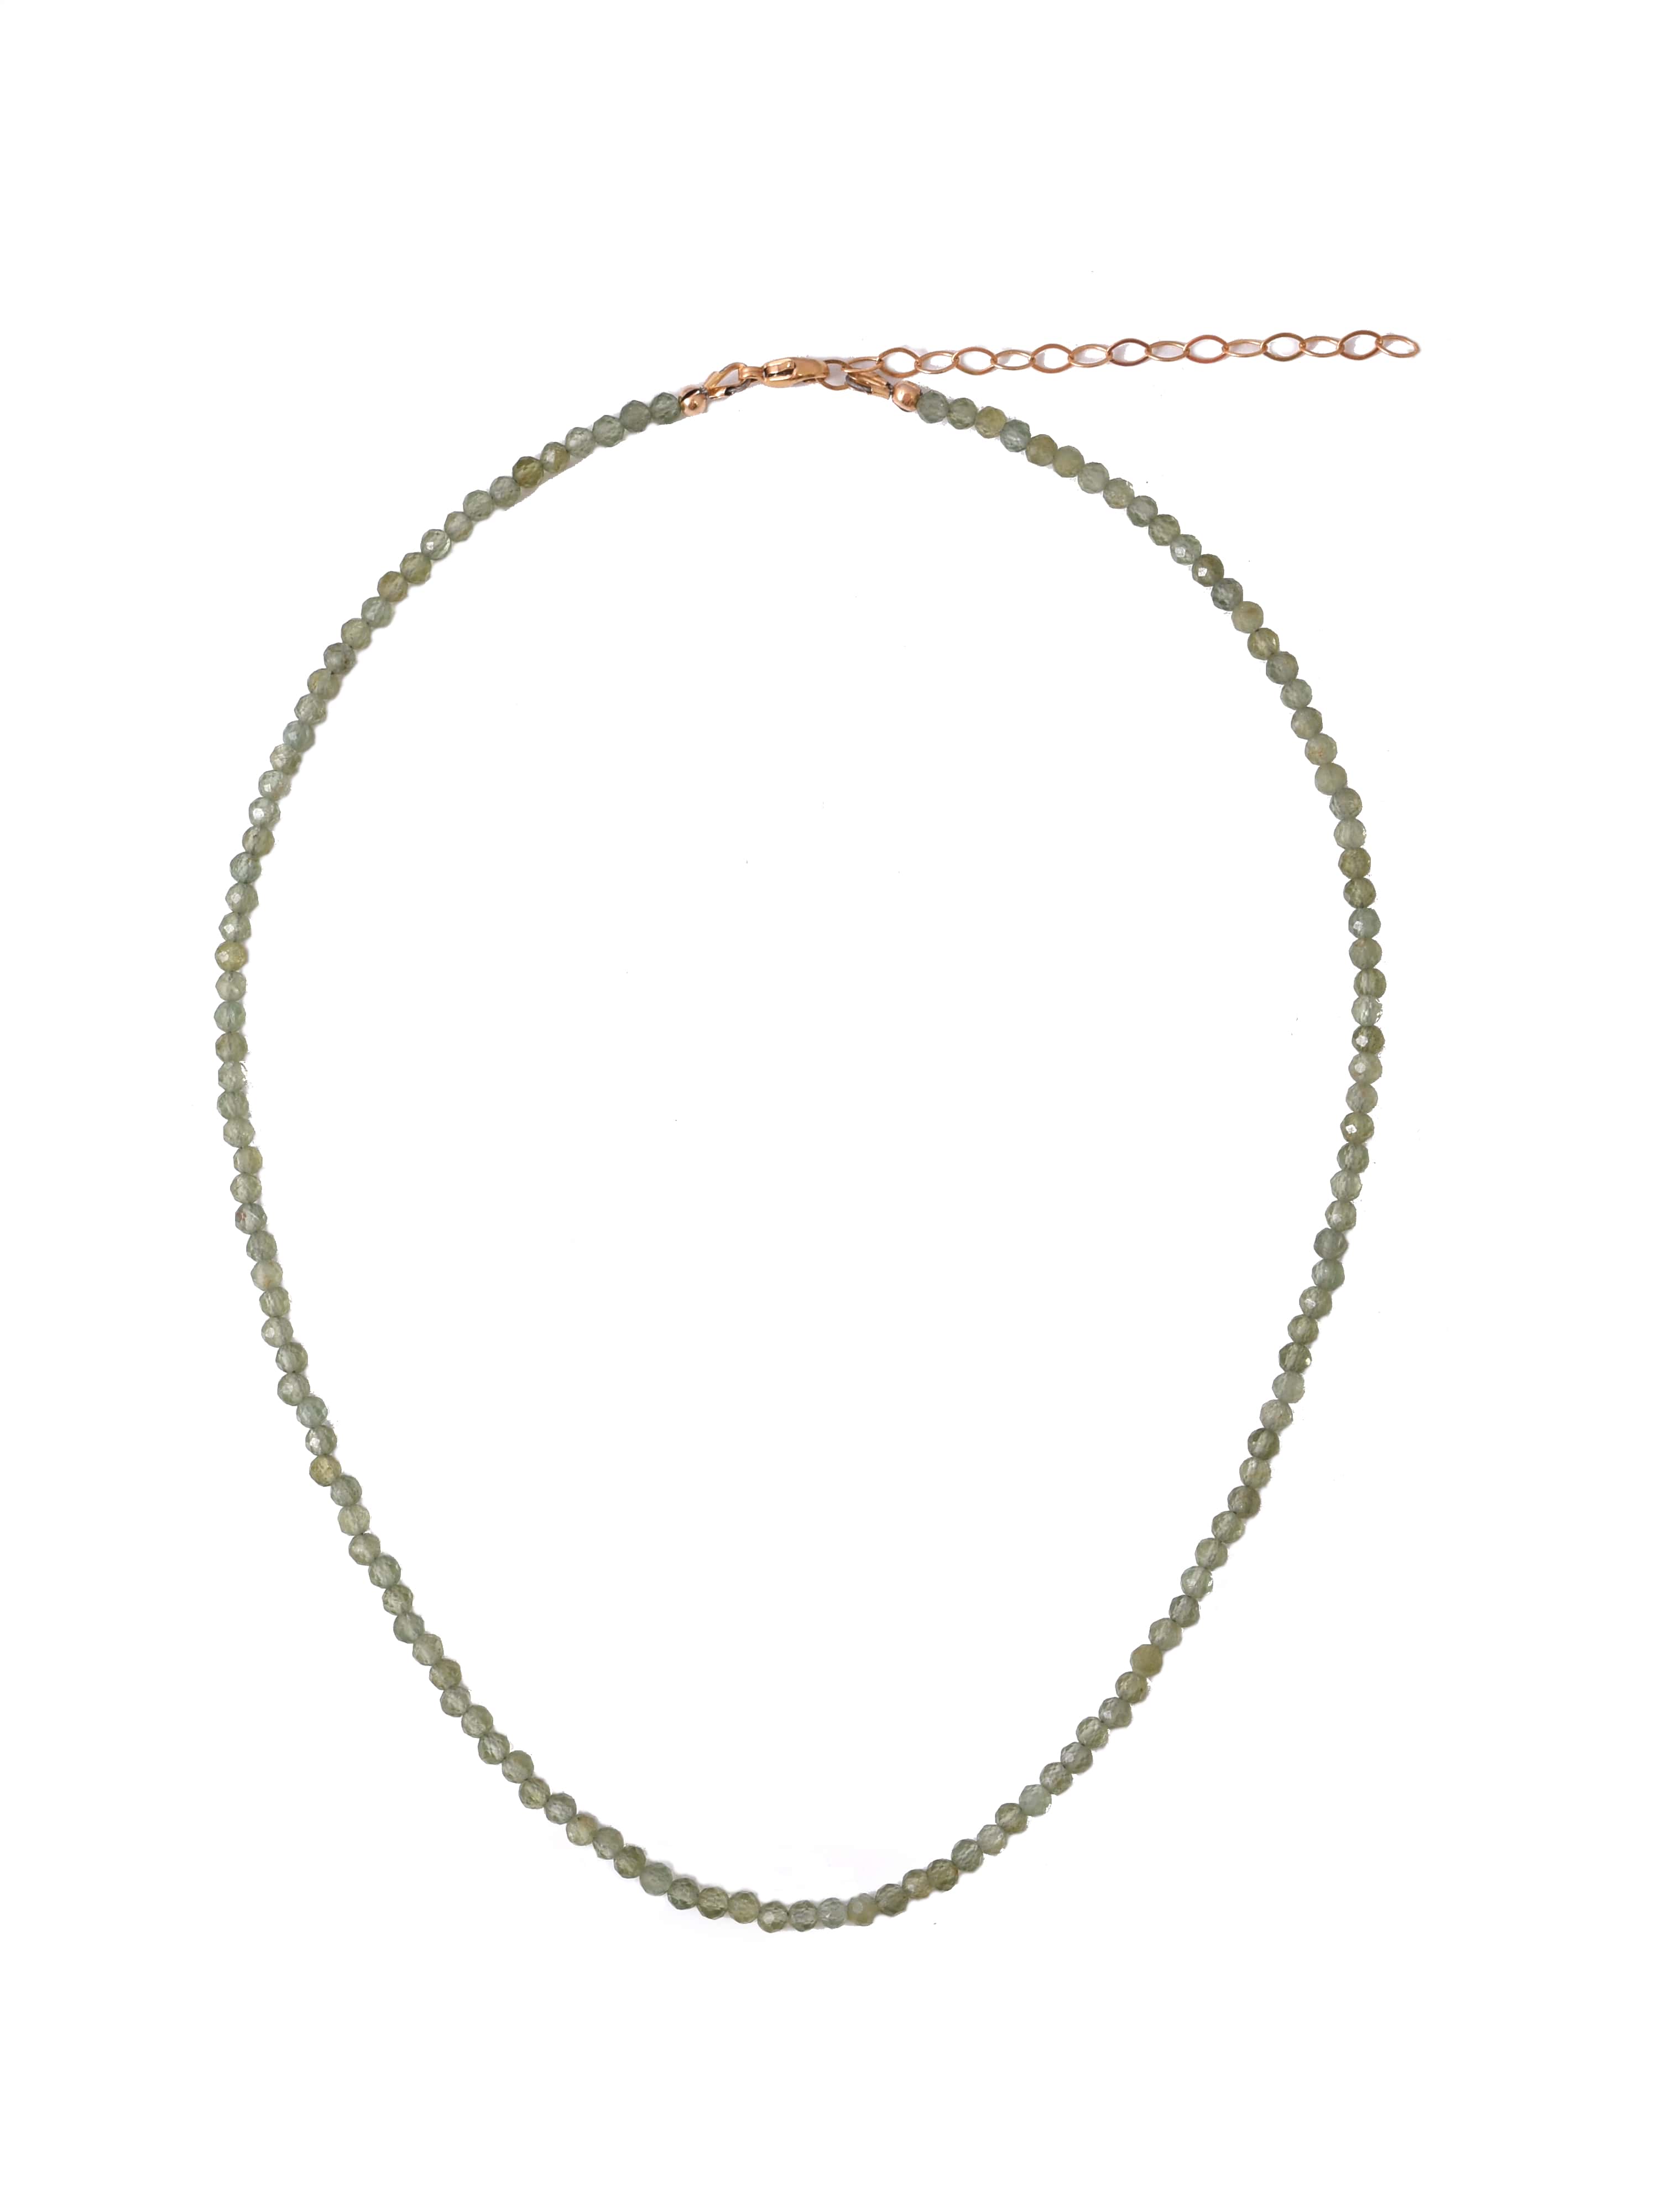 Jade Dainty Beaded Necklace